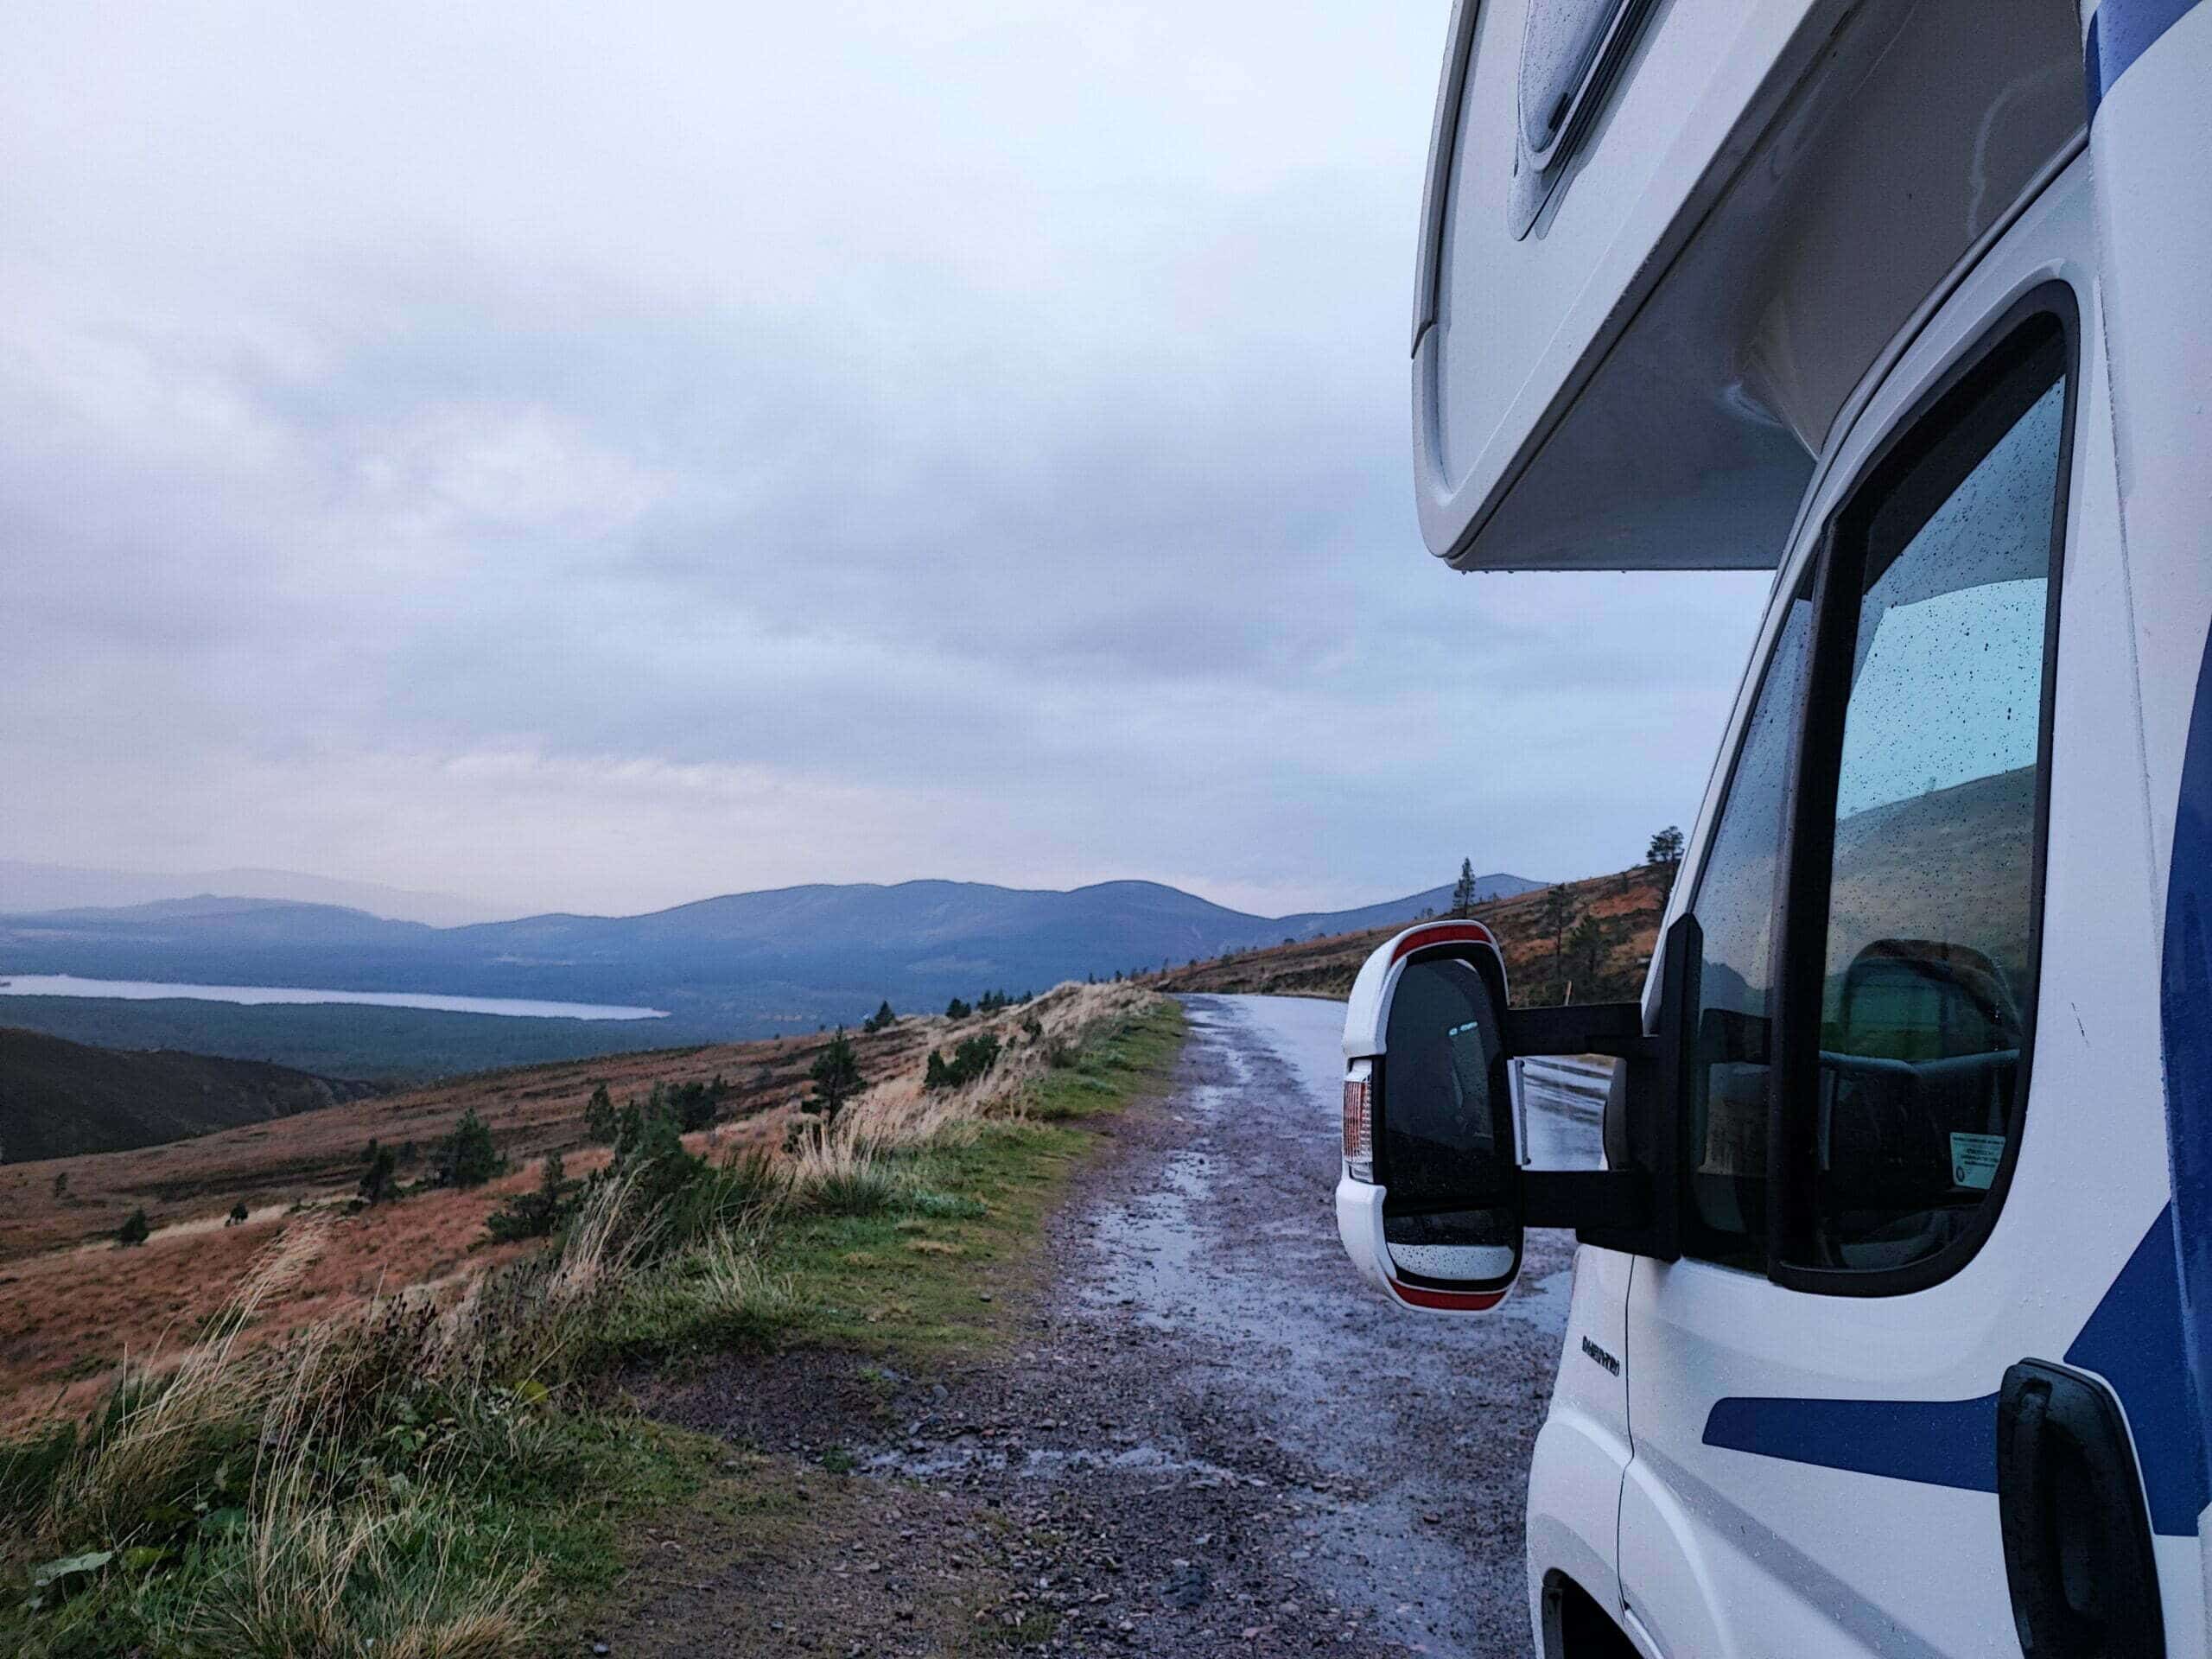 Maggiori informazioni sull'articolo Kilt e chilometri: un'avventura in camper attraverso la Scozia come guida per il tuo prossimo viaggio